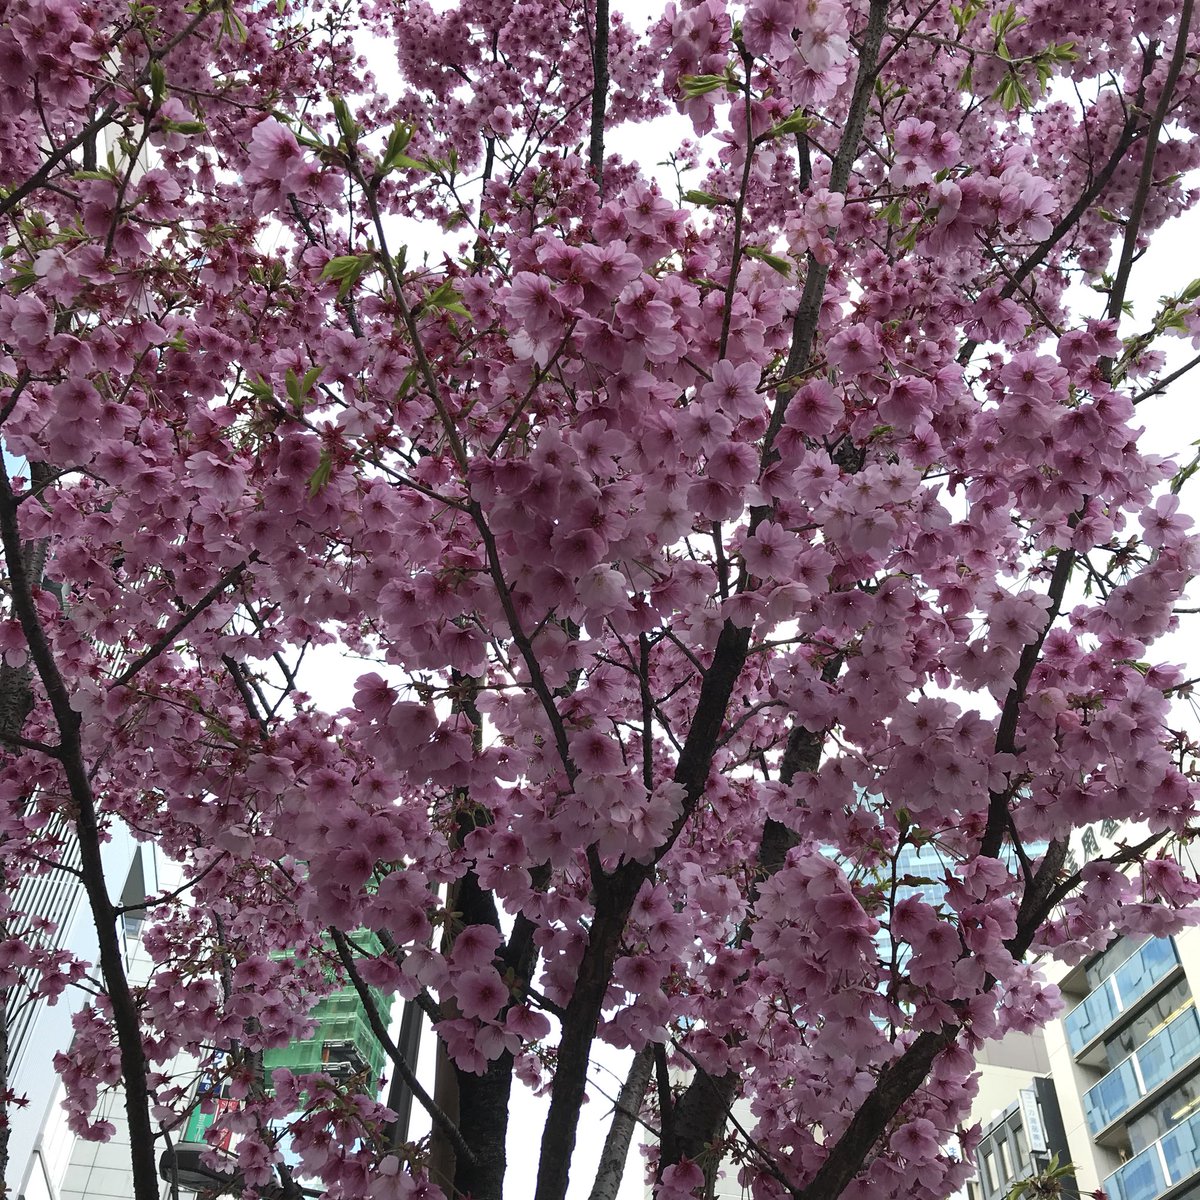 Ichiro Mizuki No Twitter おはゼーット ひときわ目立つ濃いピンク色の桜 カワヅザクラかと思いきや咲く時期が遅いので種類は分からけどインスタ映えする桜だz 今日も良い一日を Have A Good Weekend Pura Vida Z 桜 濃いピンク色の桜 水木一郎 T Co